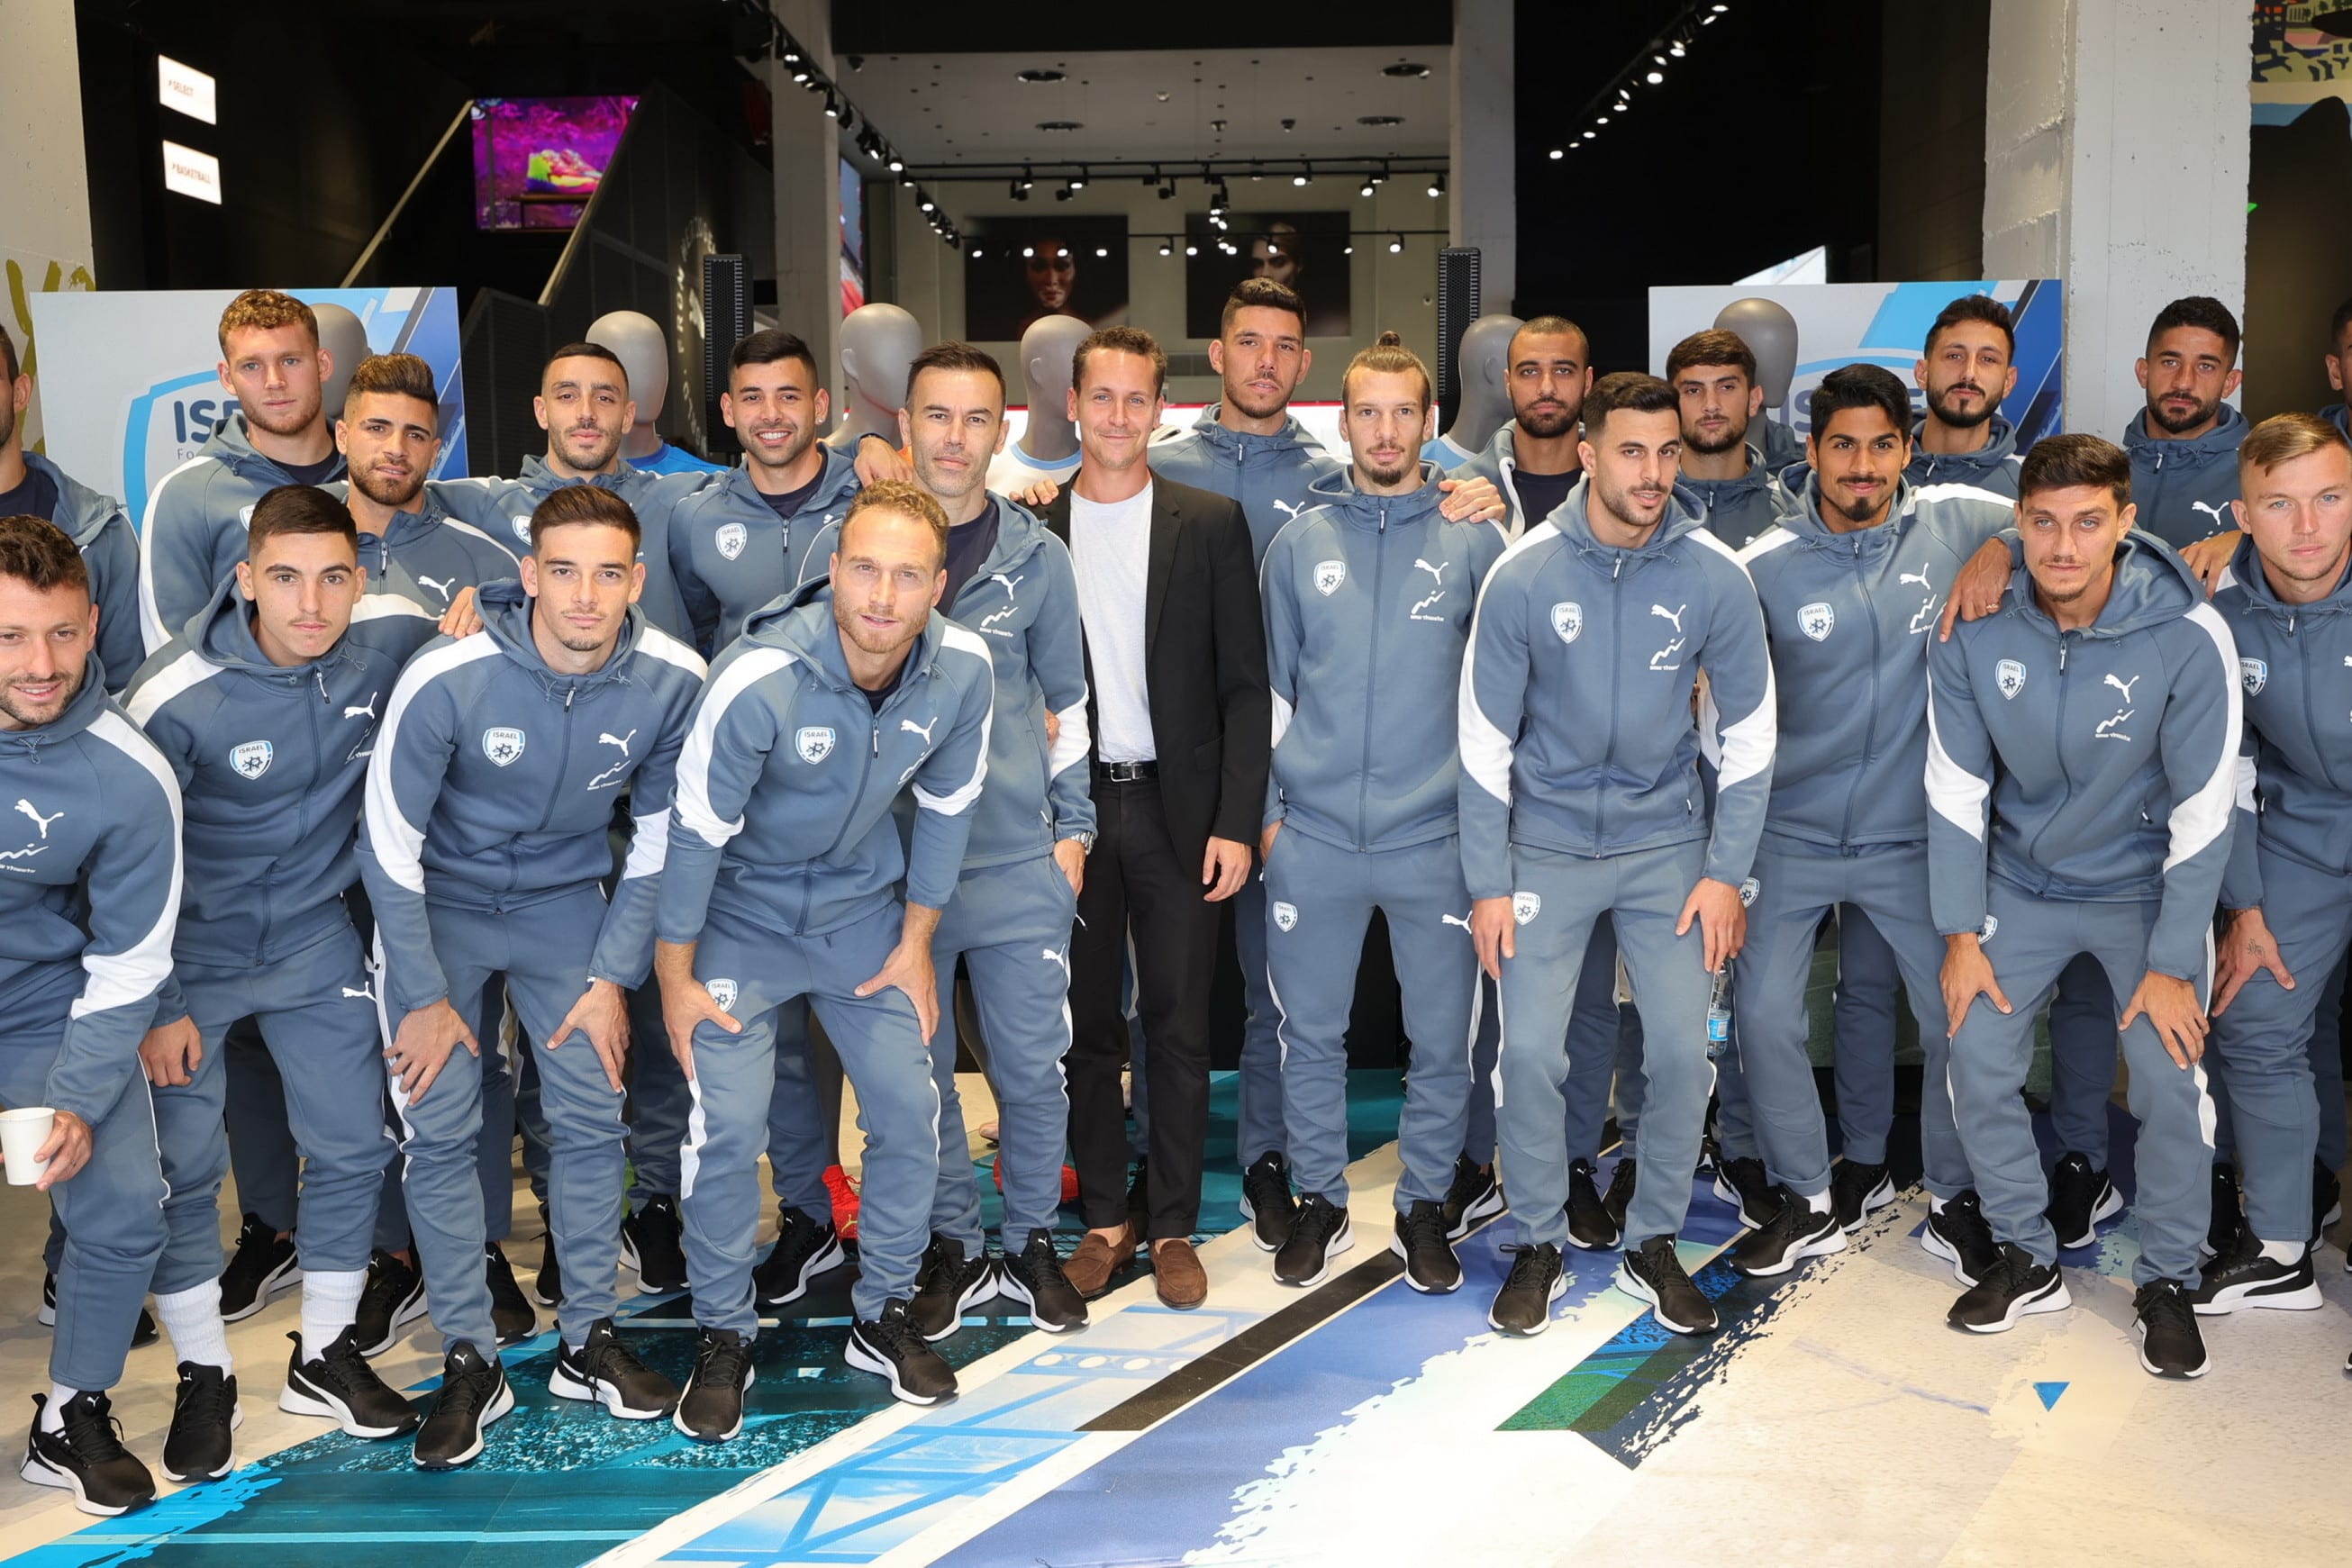 תומר אירני מבעלי קבוצת אירני עם נבחרת ישראל בכדורגל במדים החדשים של PUMA צילום רפי דלויה